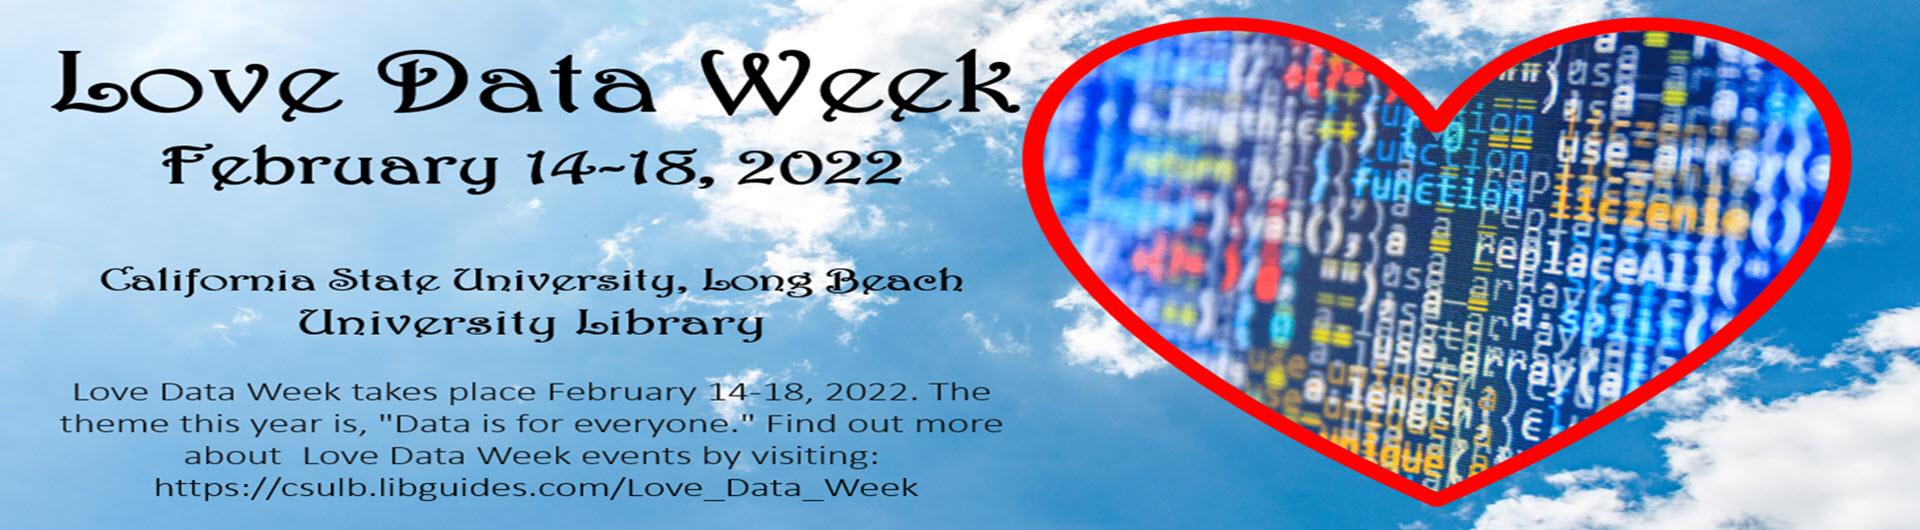 Love Data Week 2022, February 14-18